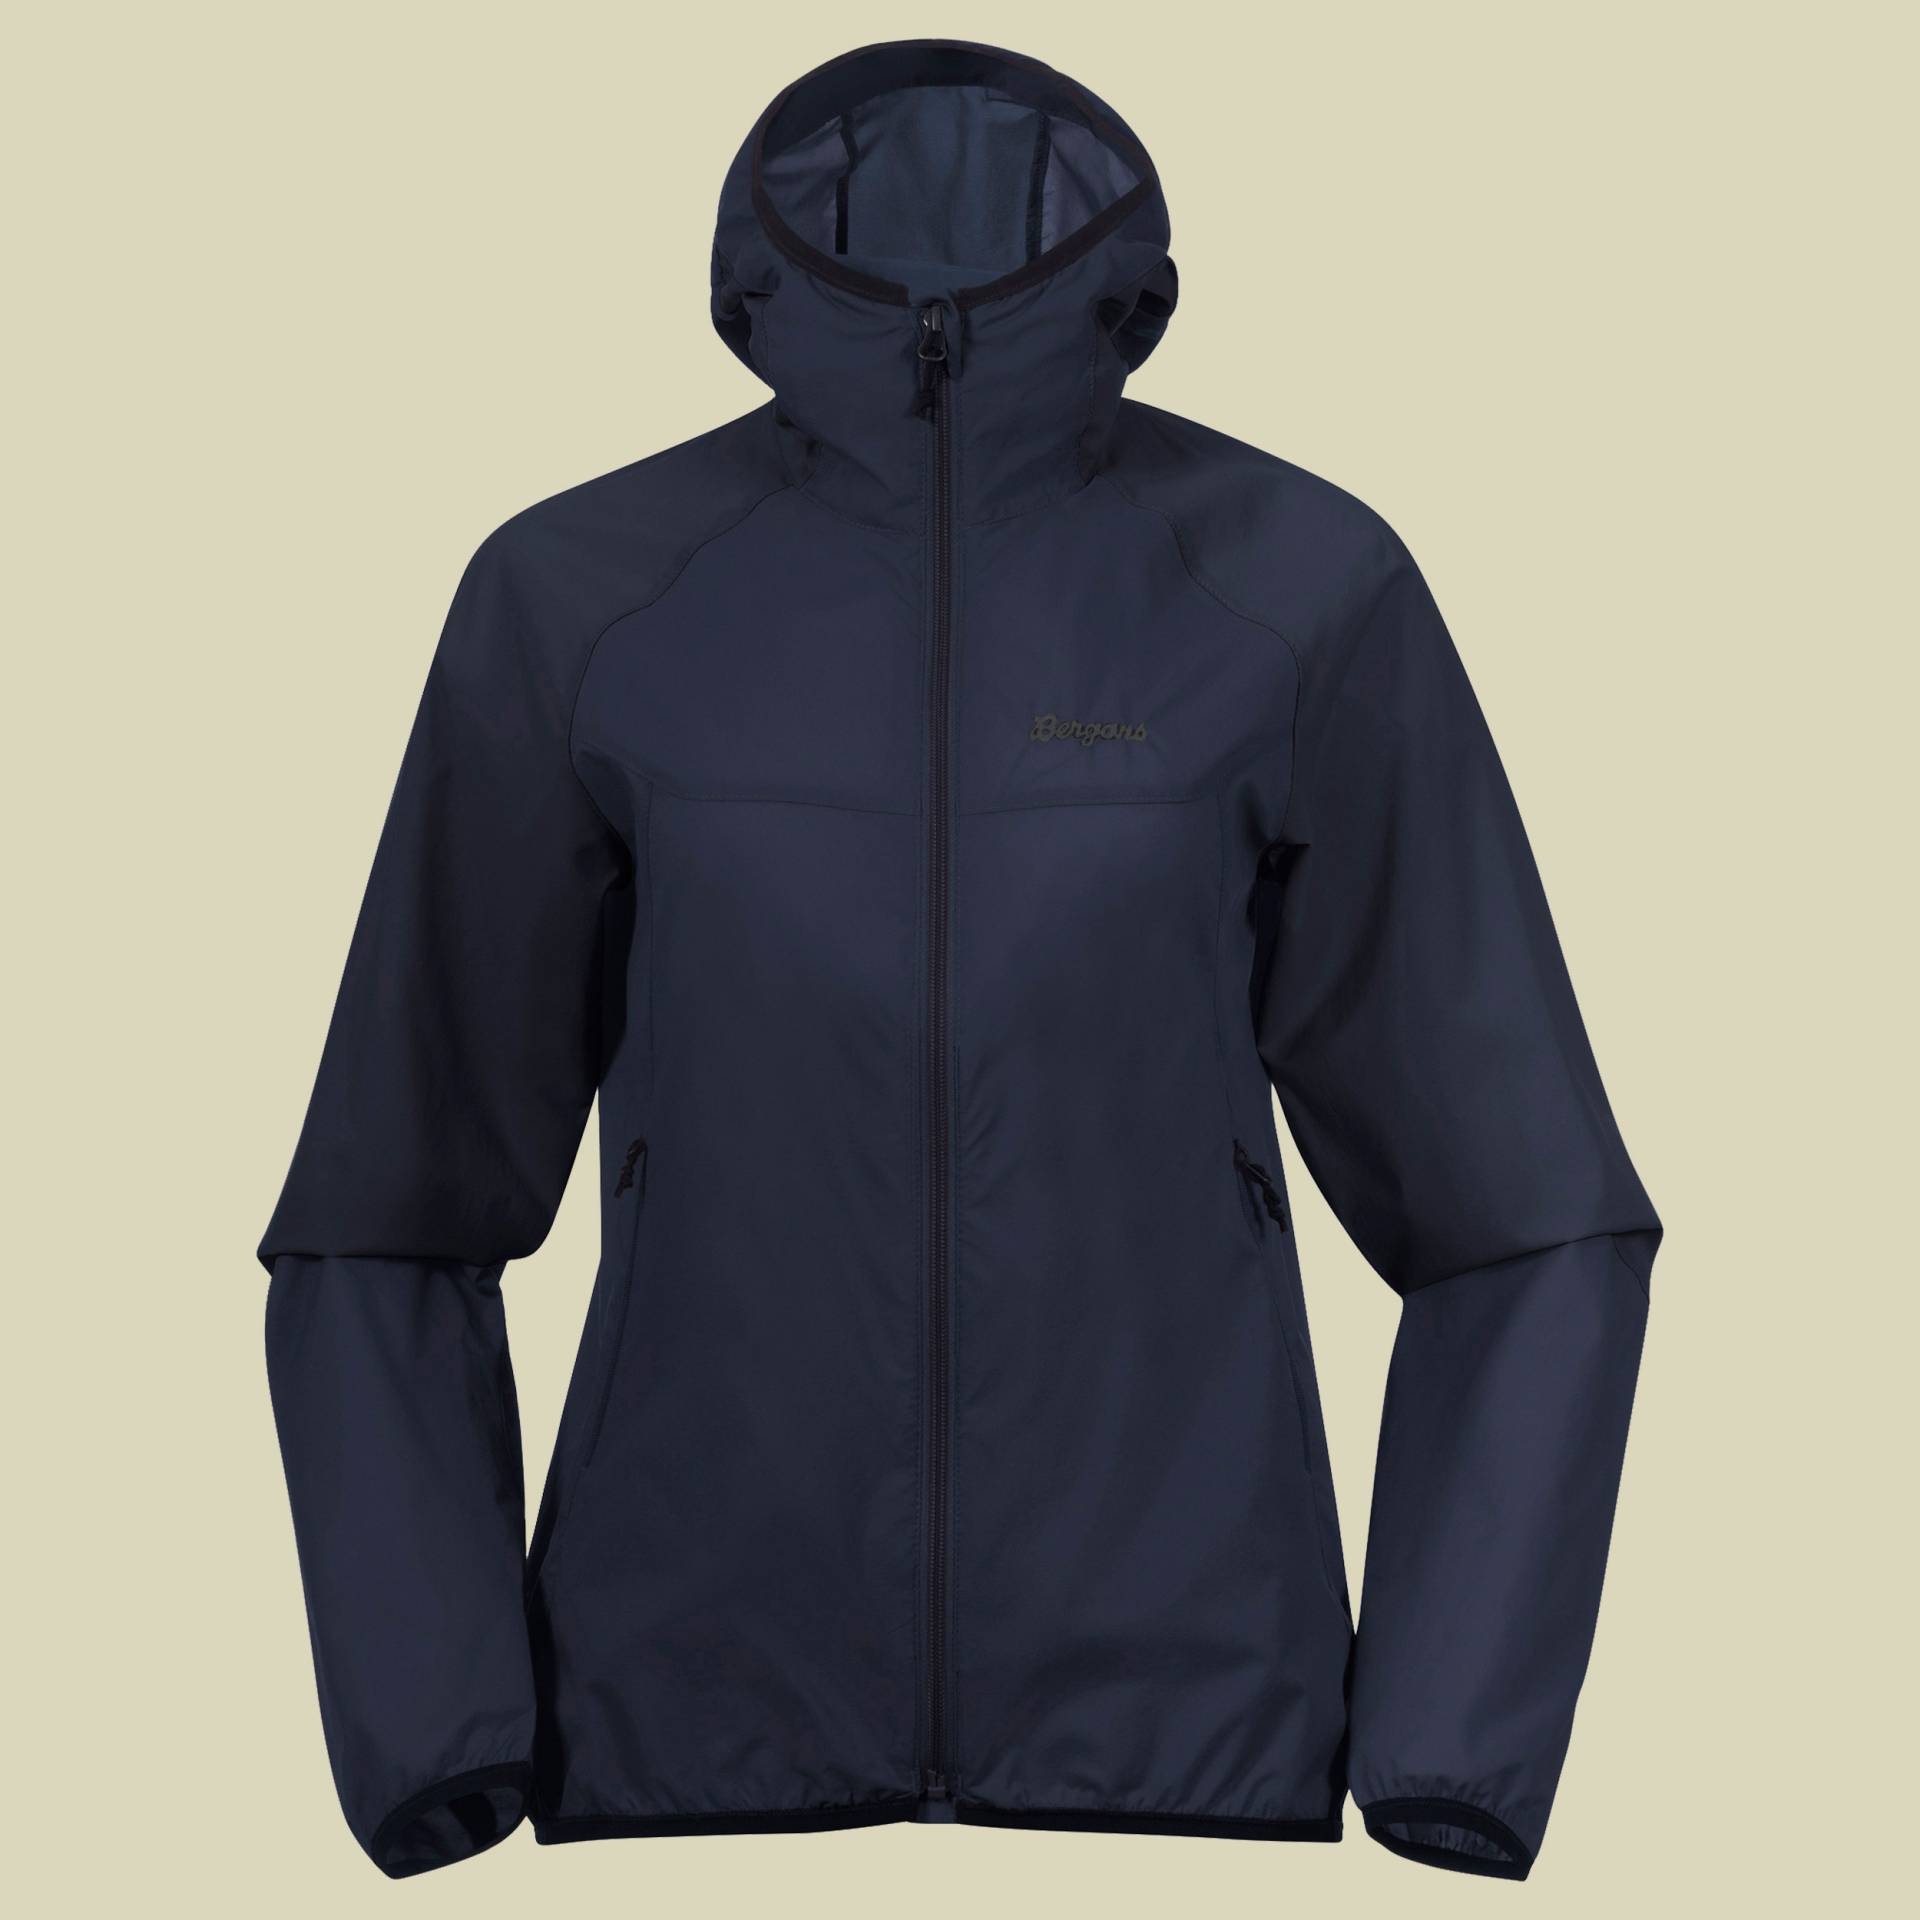 Vaagaa Windbreaker Jacket Women Größe XL Farbe navy blue von bergans